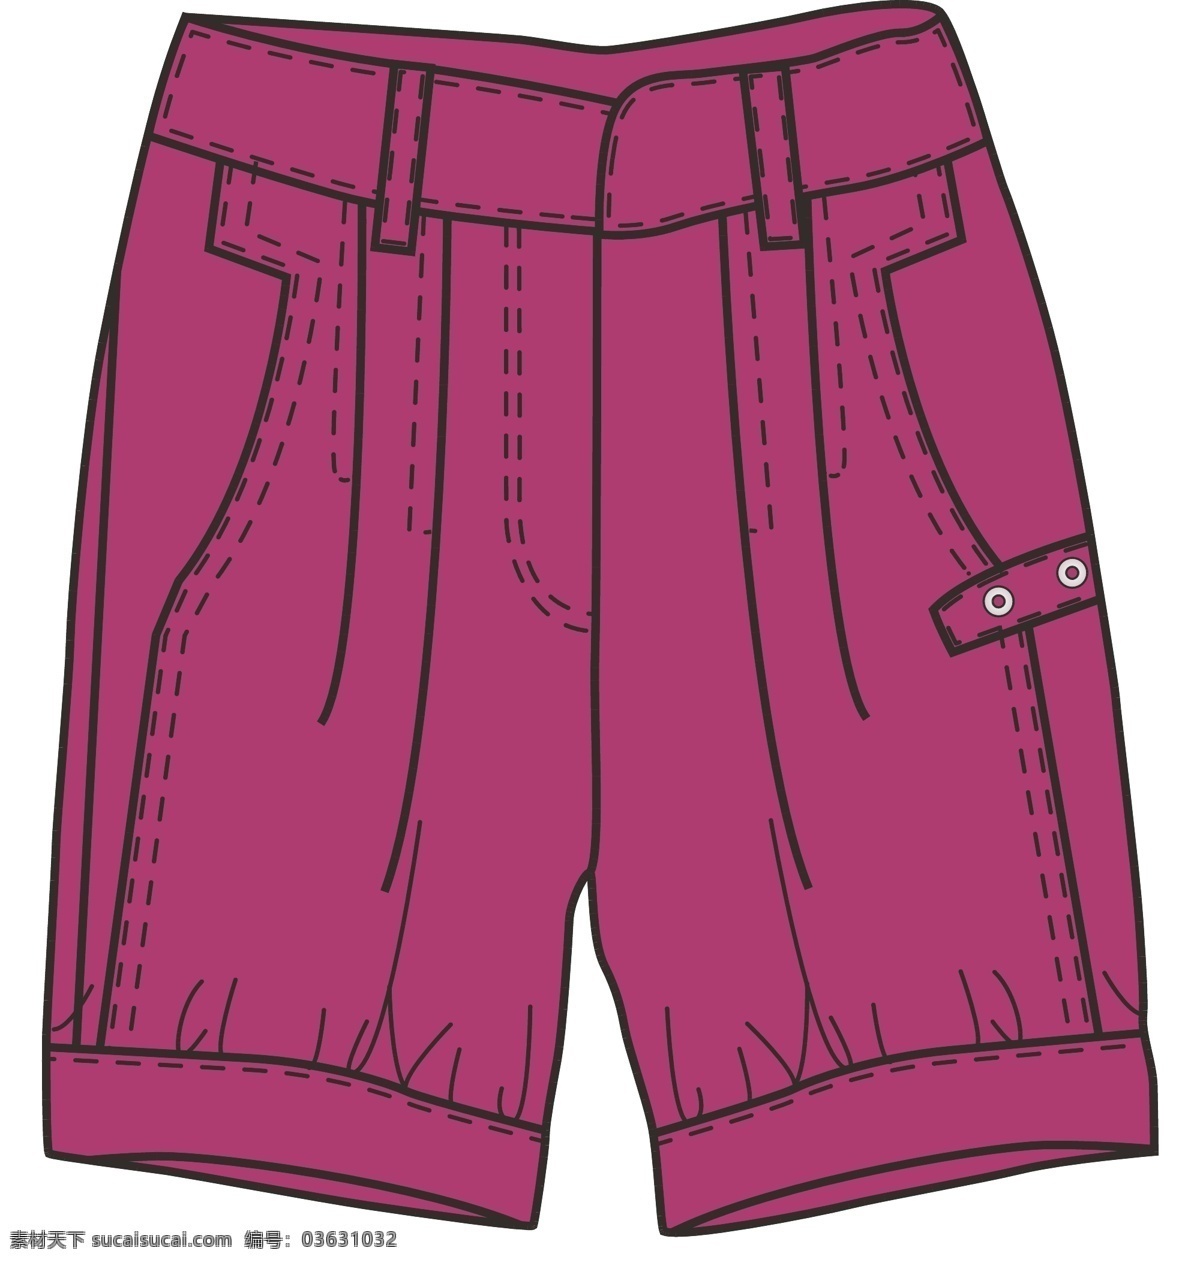 女童 裤子 版 型 短裤 服装设计 女童裤子版型 设计版型 矢量 其他服装素材